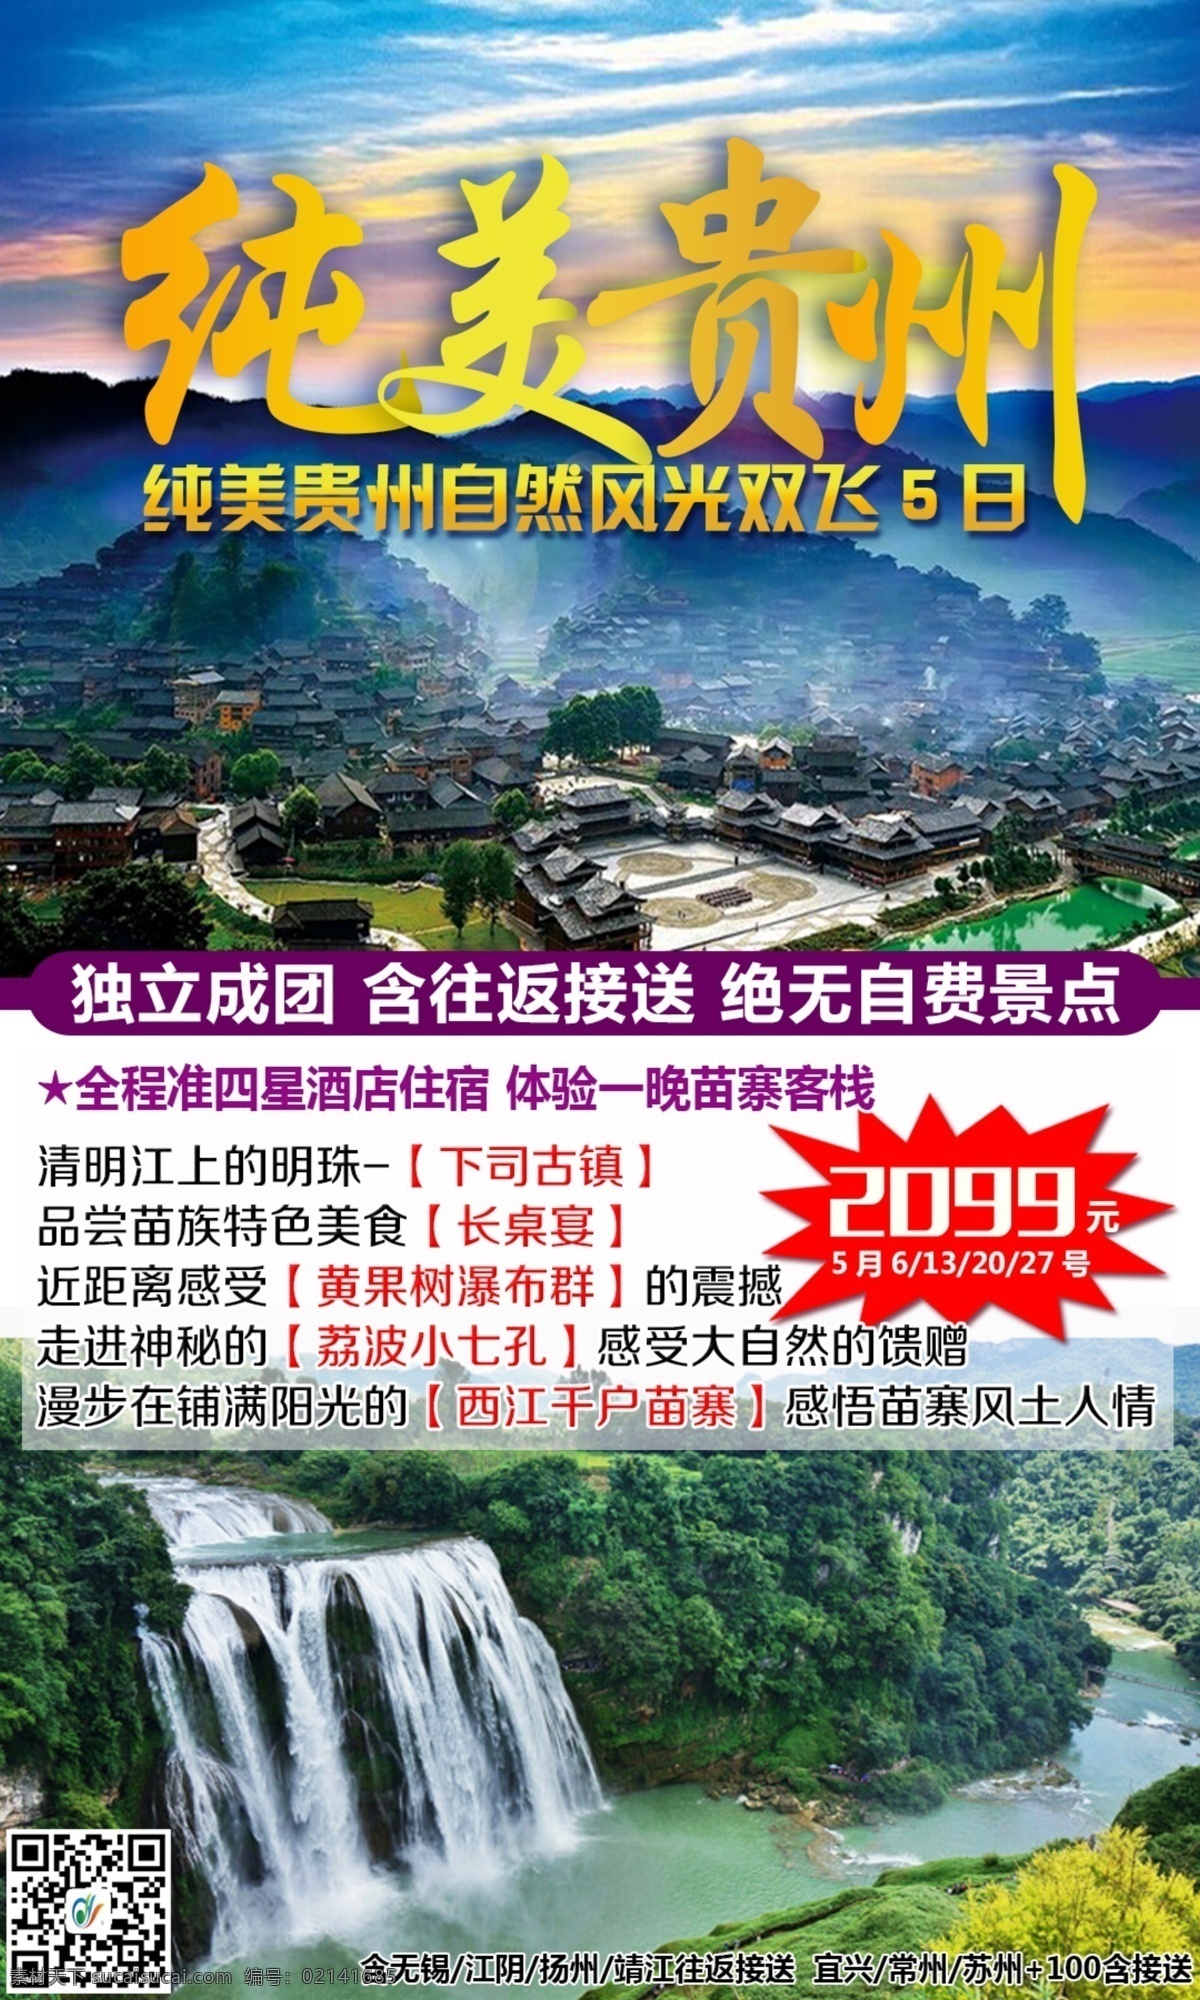 贵州5月海报 贵州旅游 文字 均 修改 黄果树瀑布 纯美贵州 西江 苗寨